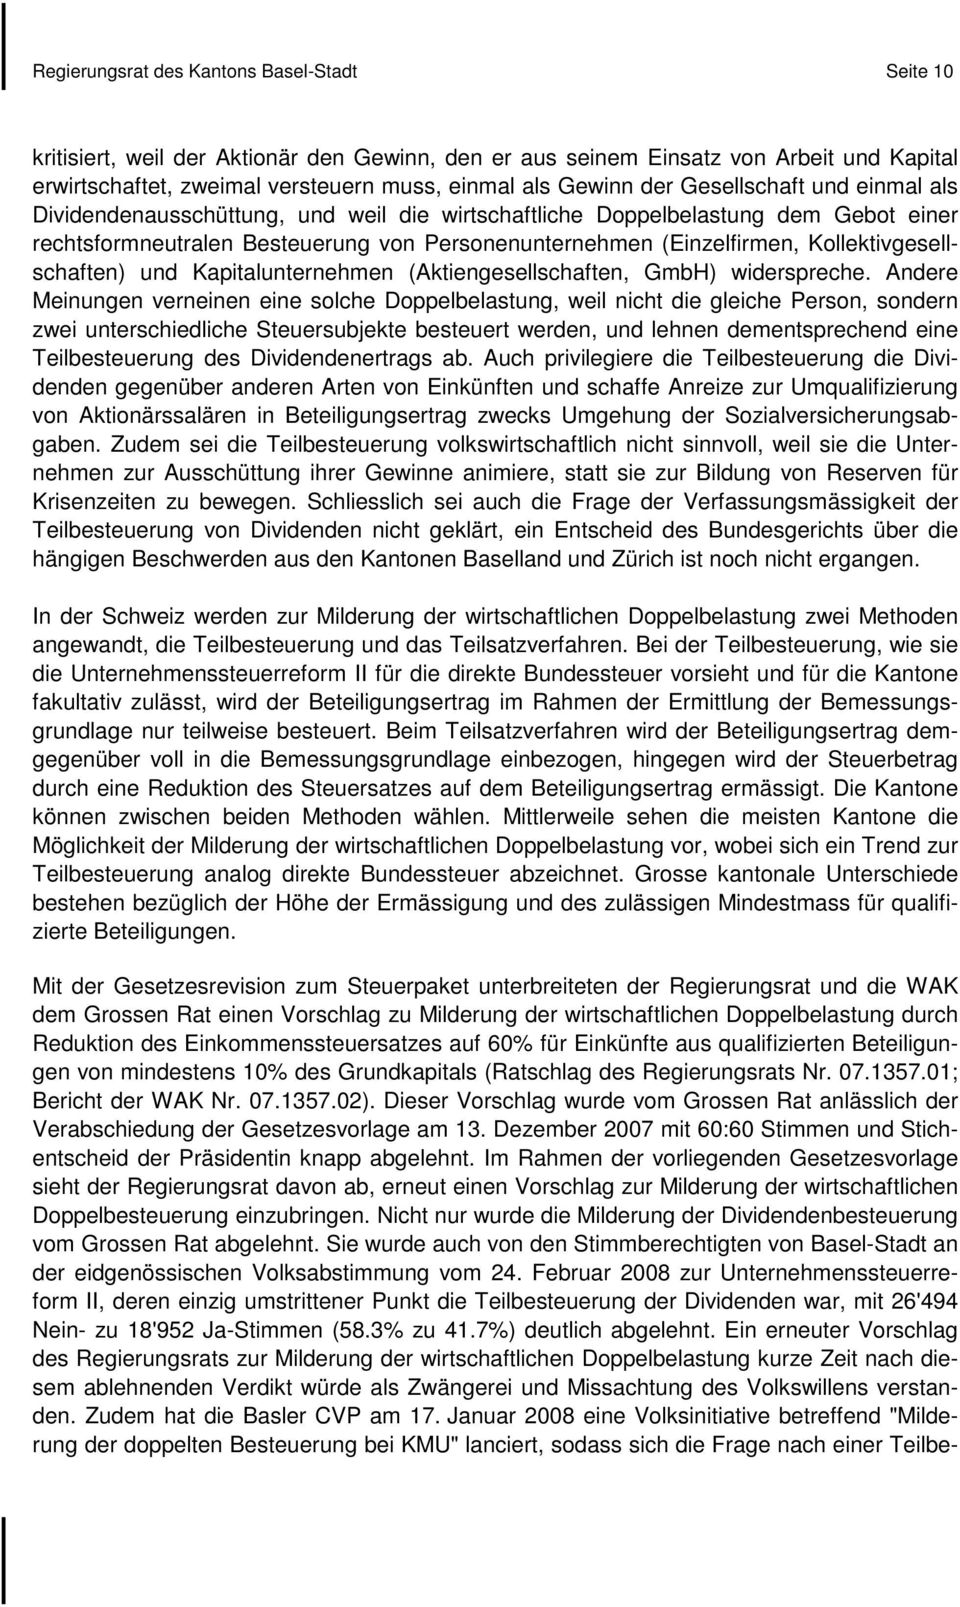 Kollektivgesellschaften) und Kapitalunternehmen (Aktiengesellschaften, GmbH) widerspreche.